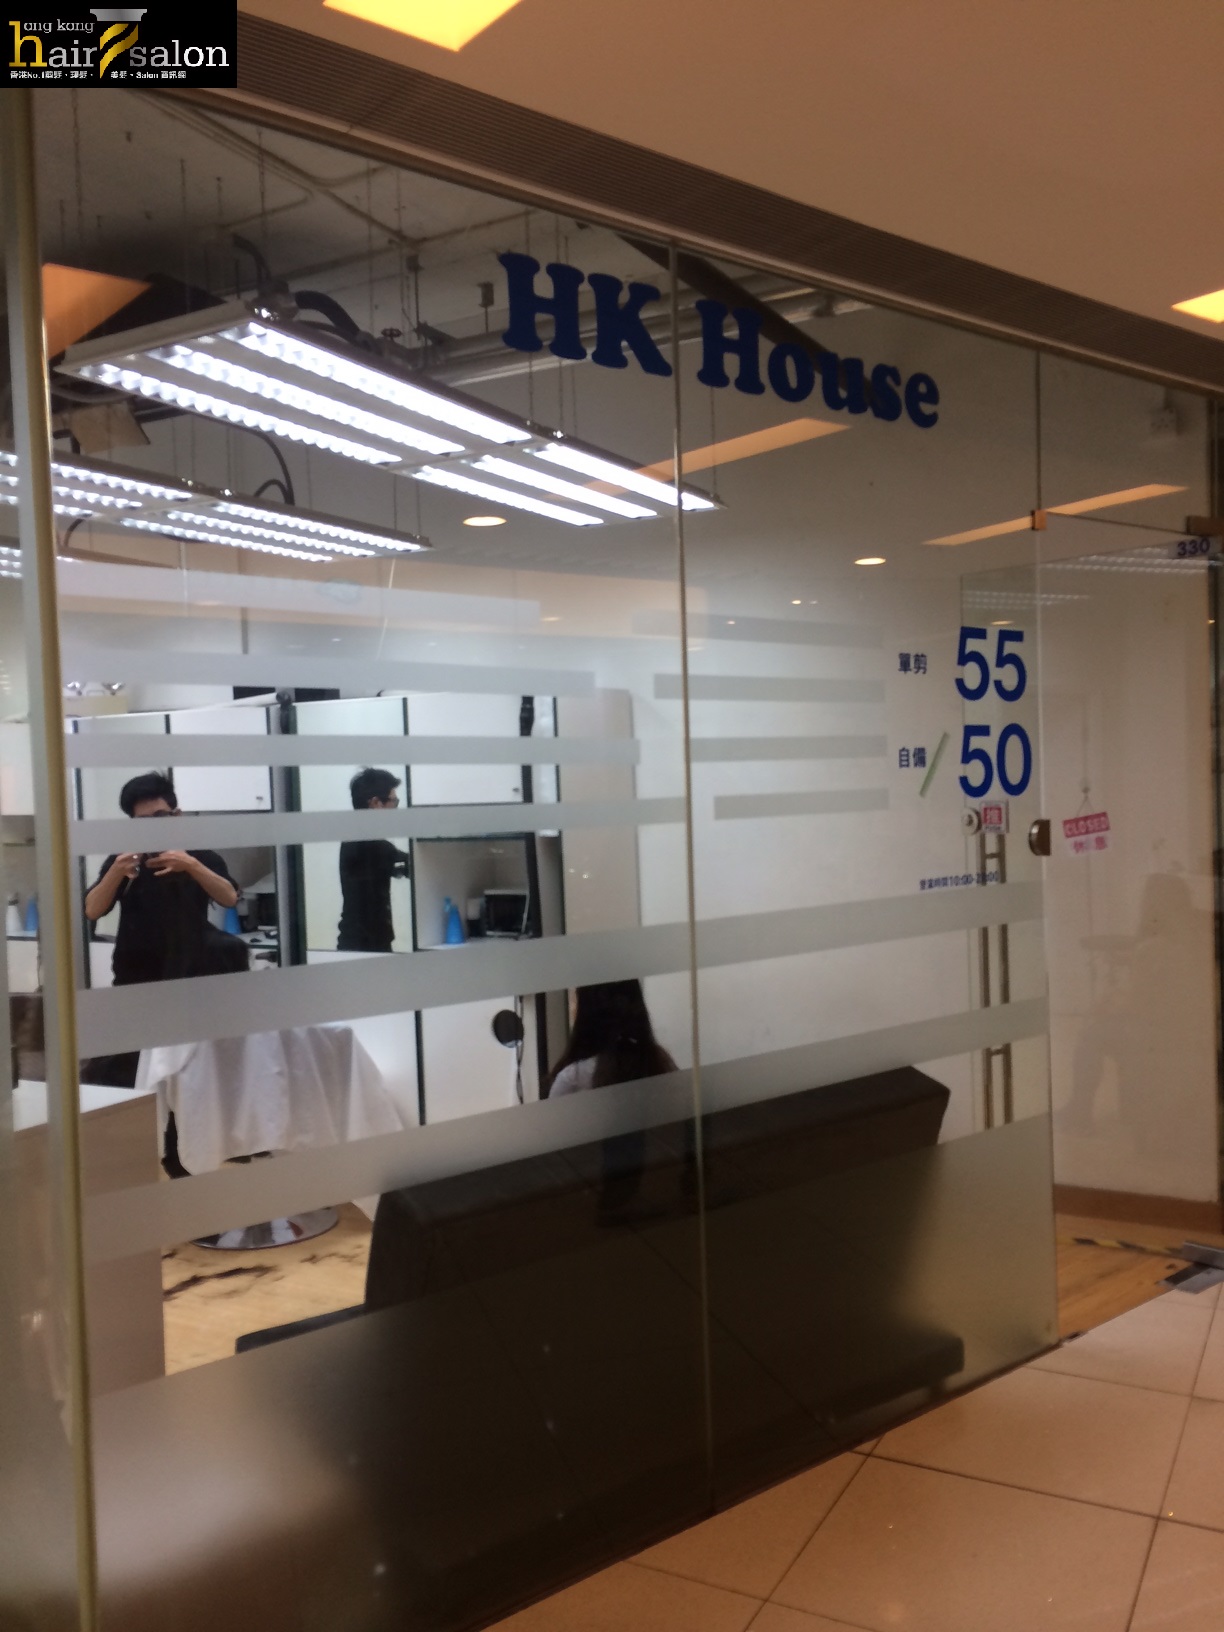 髮型屋: HK House